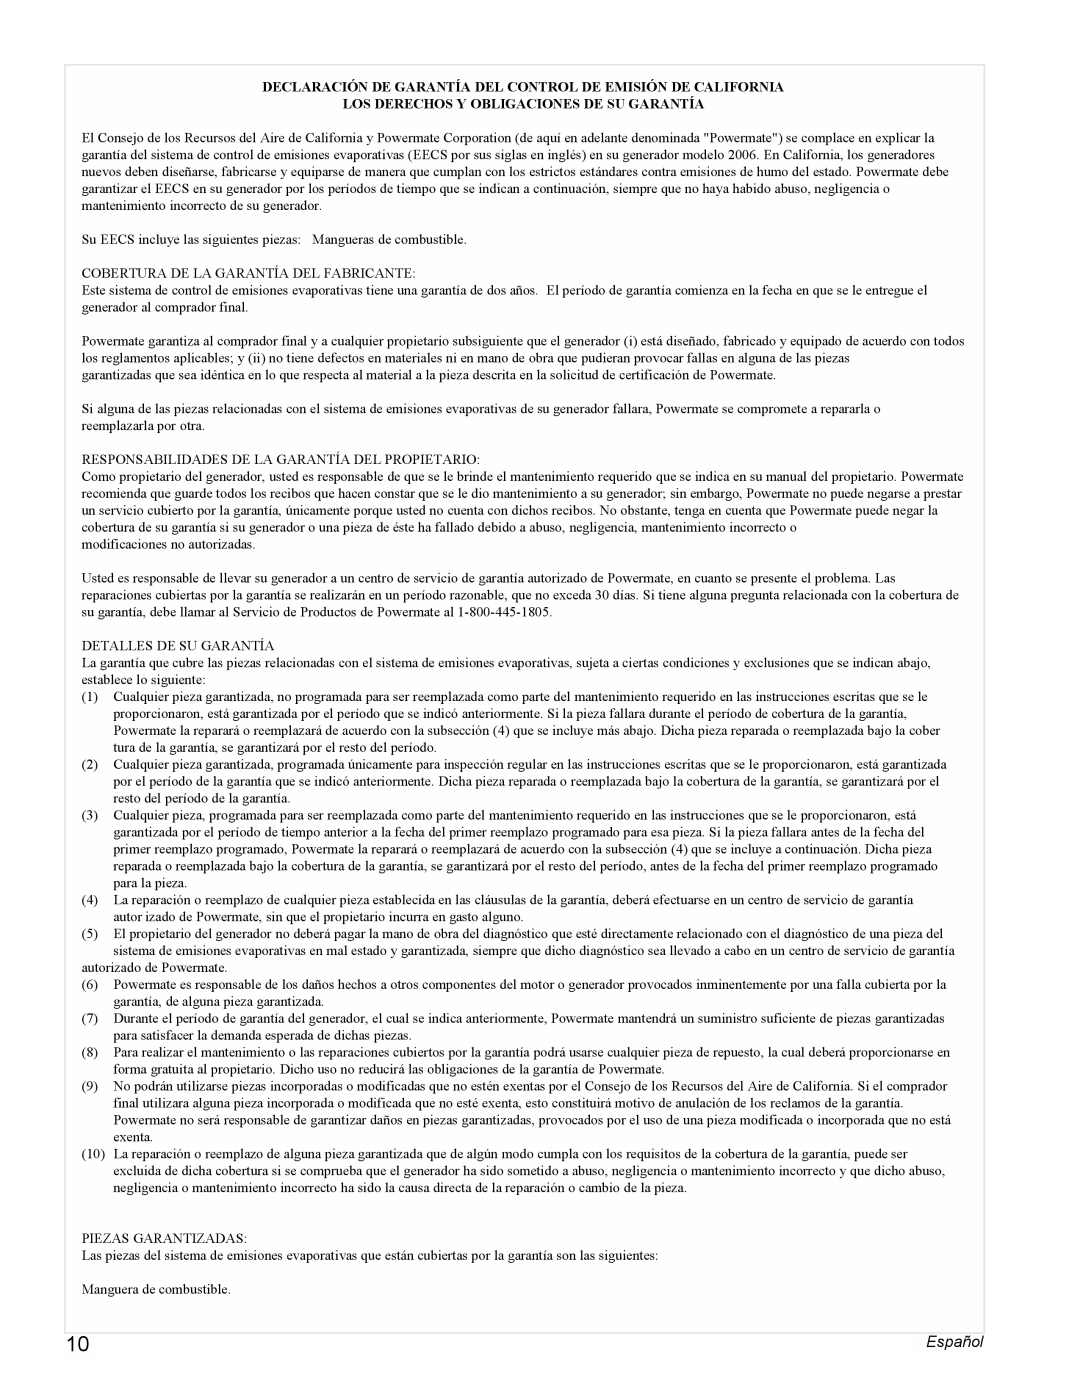 Powermate PMC401856 manual Los Derechos Y Obligaciones De Su Garantía, Español 